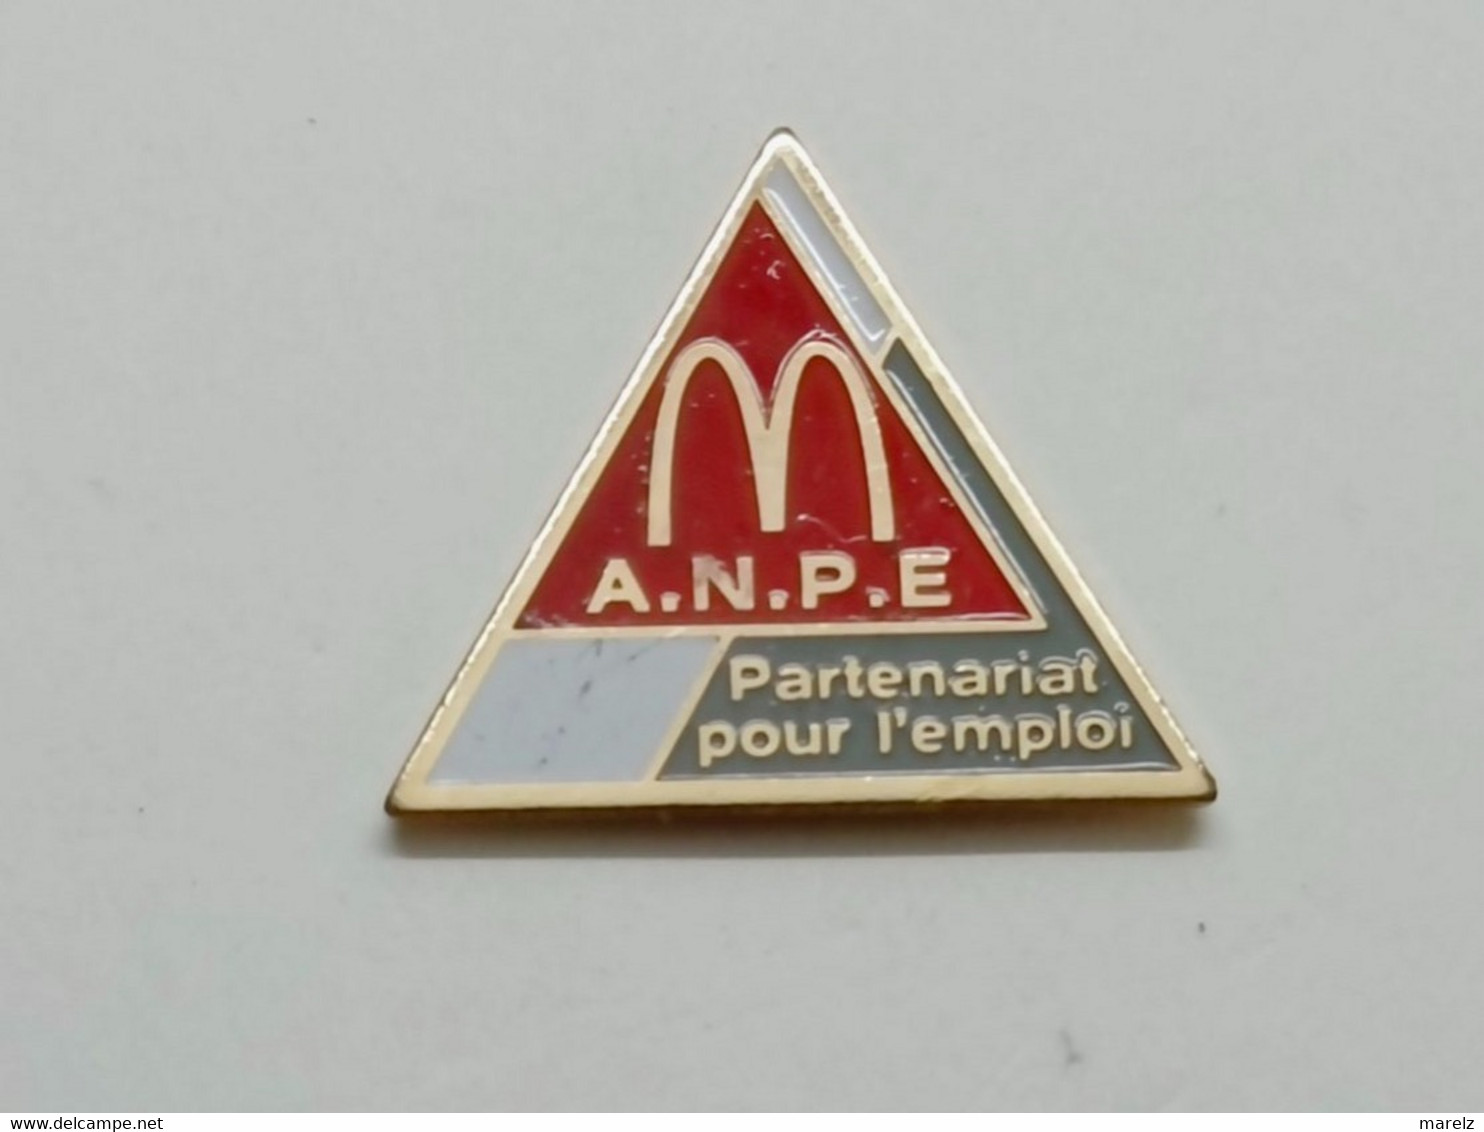 Pin's McDonald's - McDo A.N.P.E. Partenariat Pour L'Emploi - Pins MacDonald - Pin Badge Mac Donald's - McDonald's